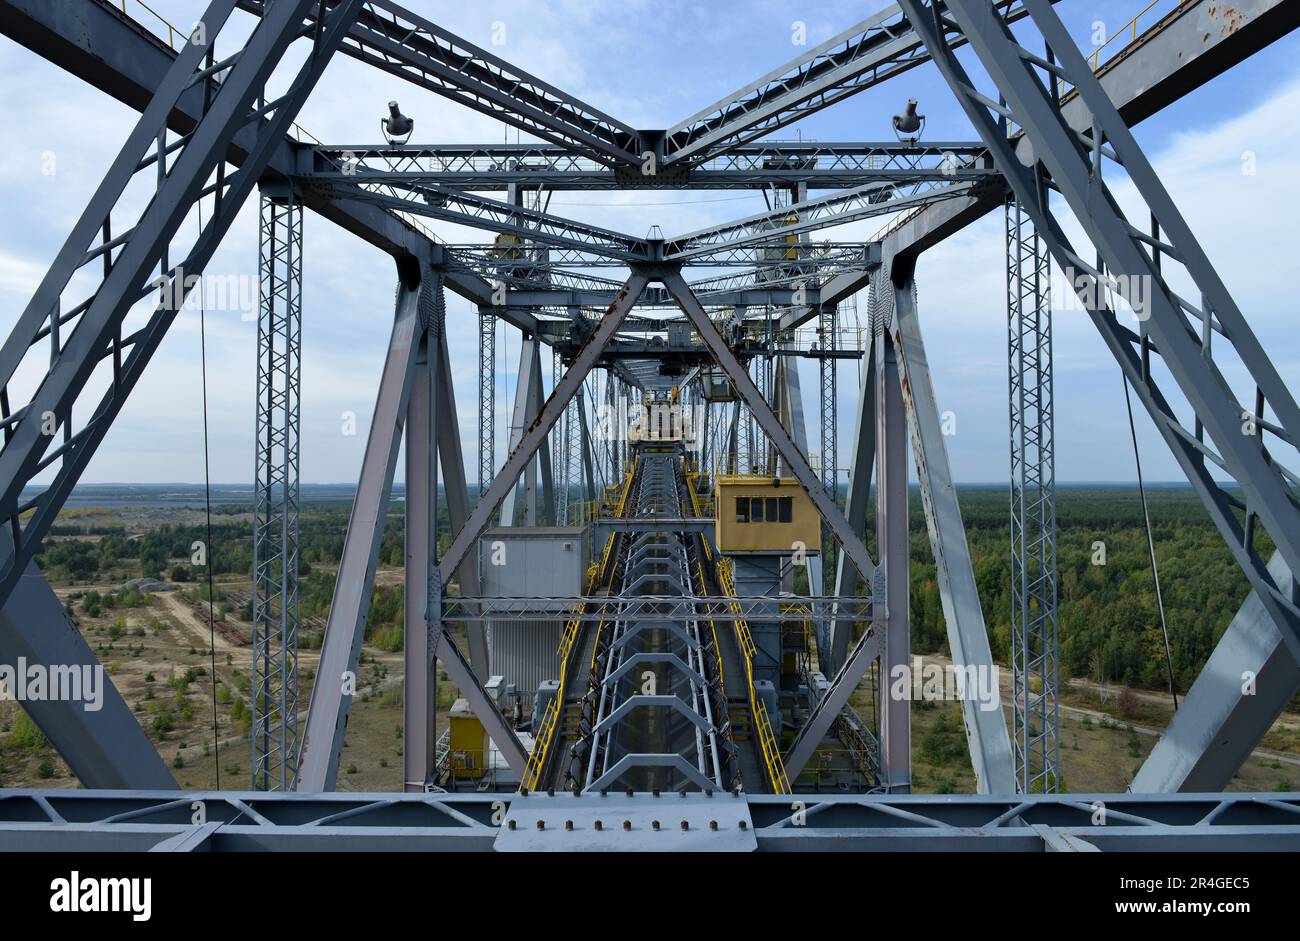 Besuchermine Überlaufbrücke F60, Mine, Lichterfeld-Schacksdorf, Elbe-Elster, Brandenburg, Deutschland Stockfoto